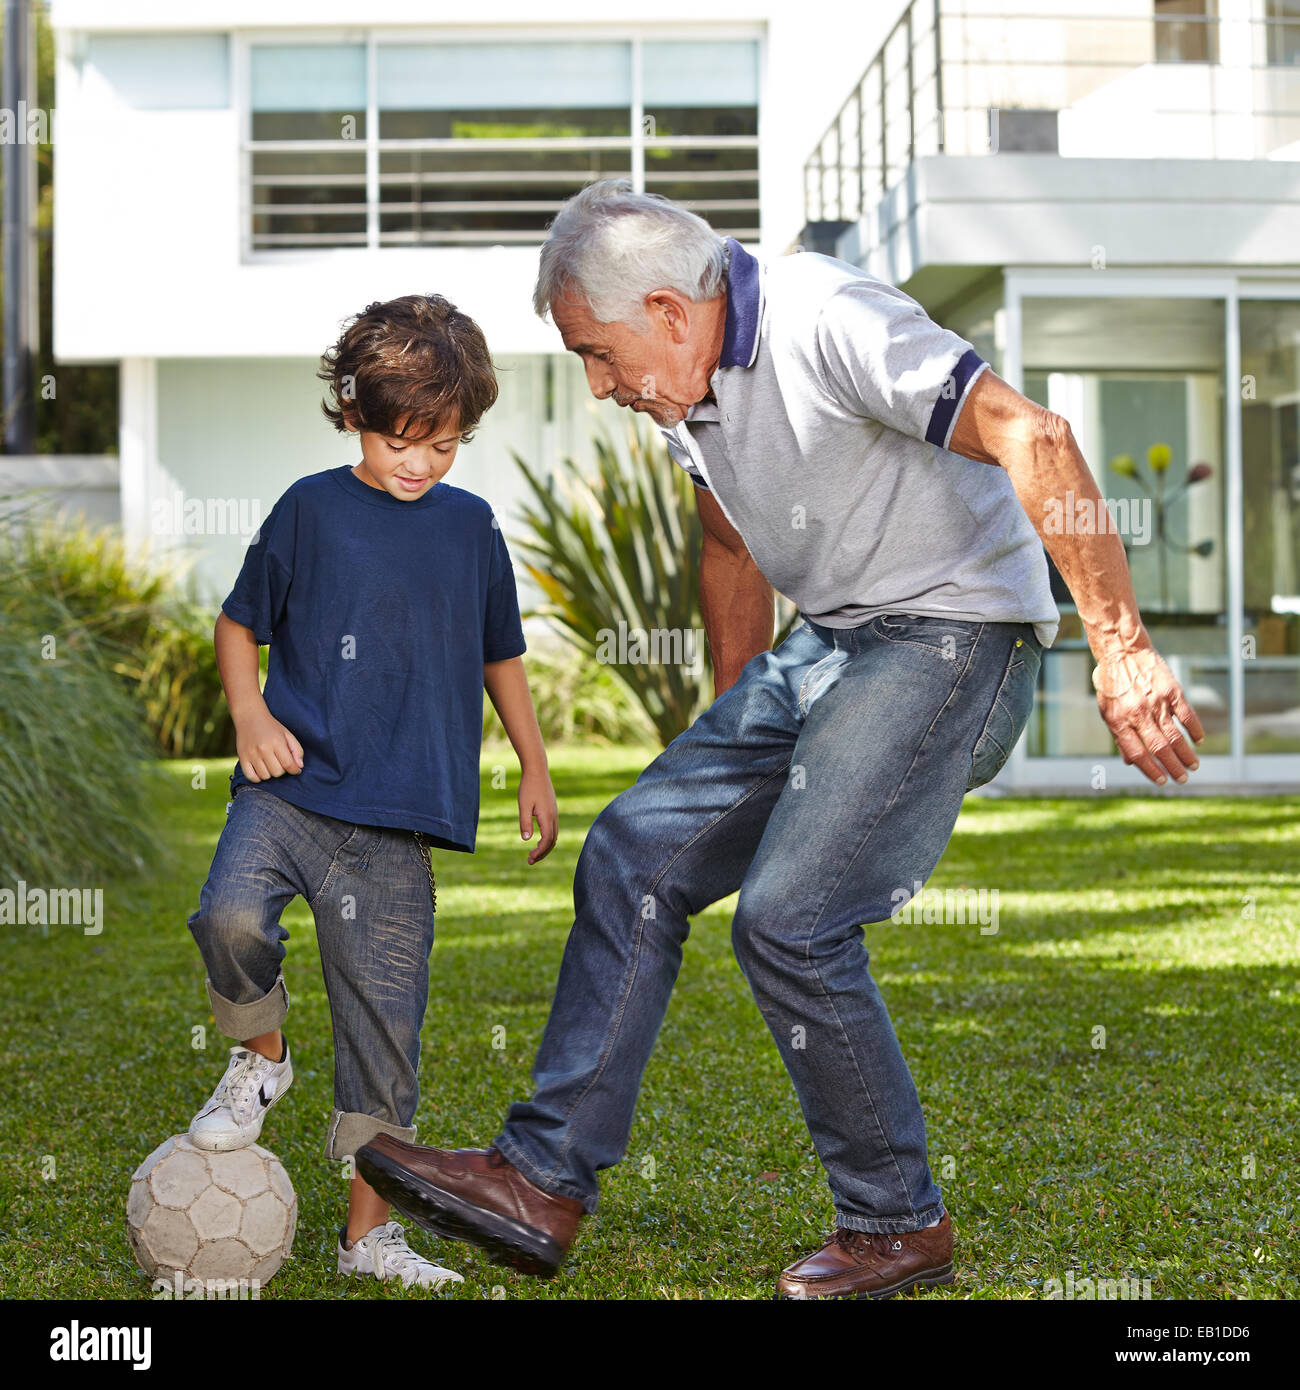 Jungen Fußball spielen mit seinem Großvater im Garten vor einem Haus Stockfoto